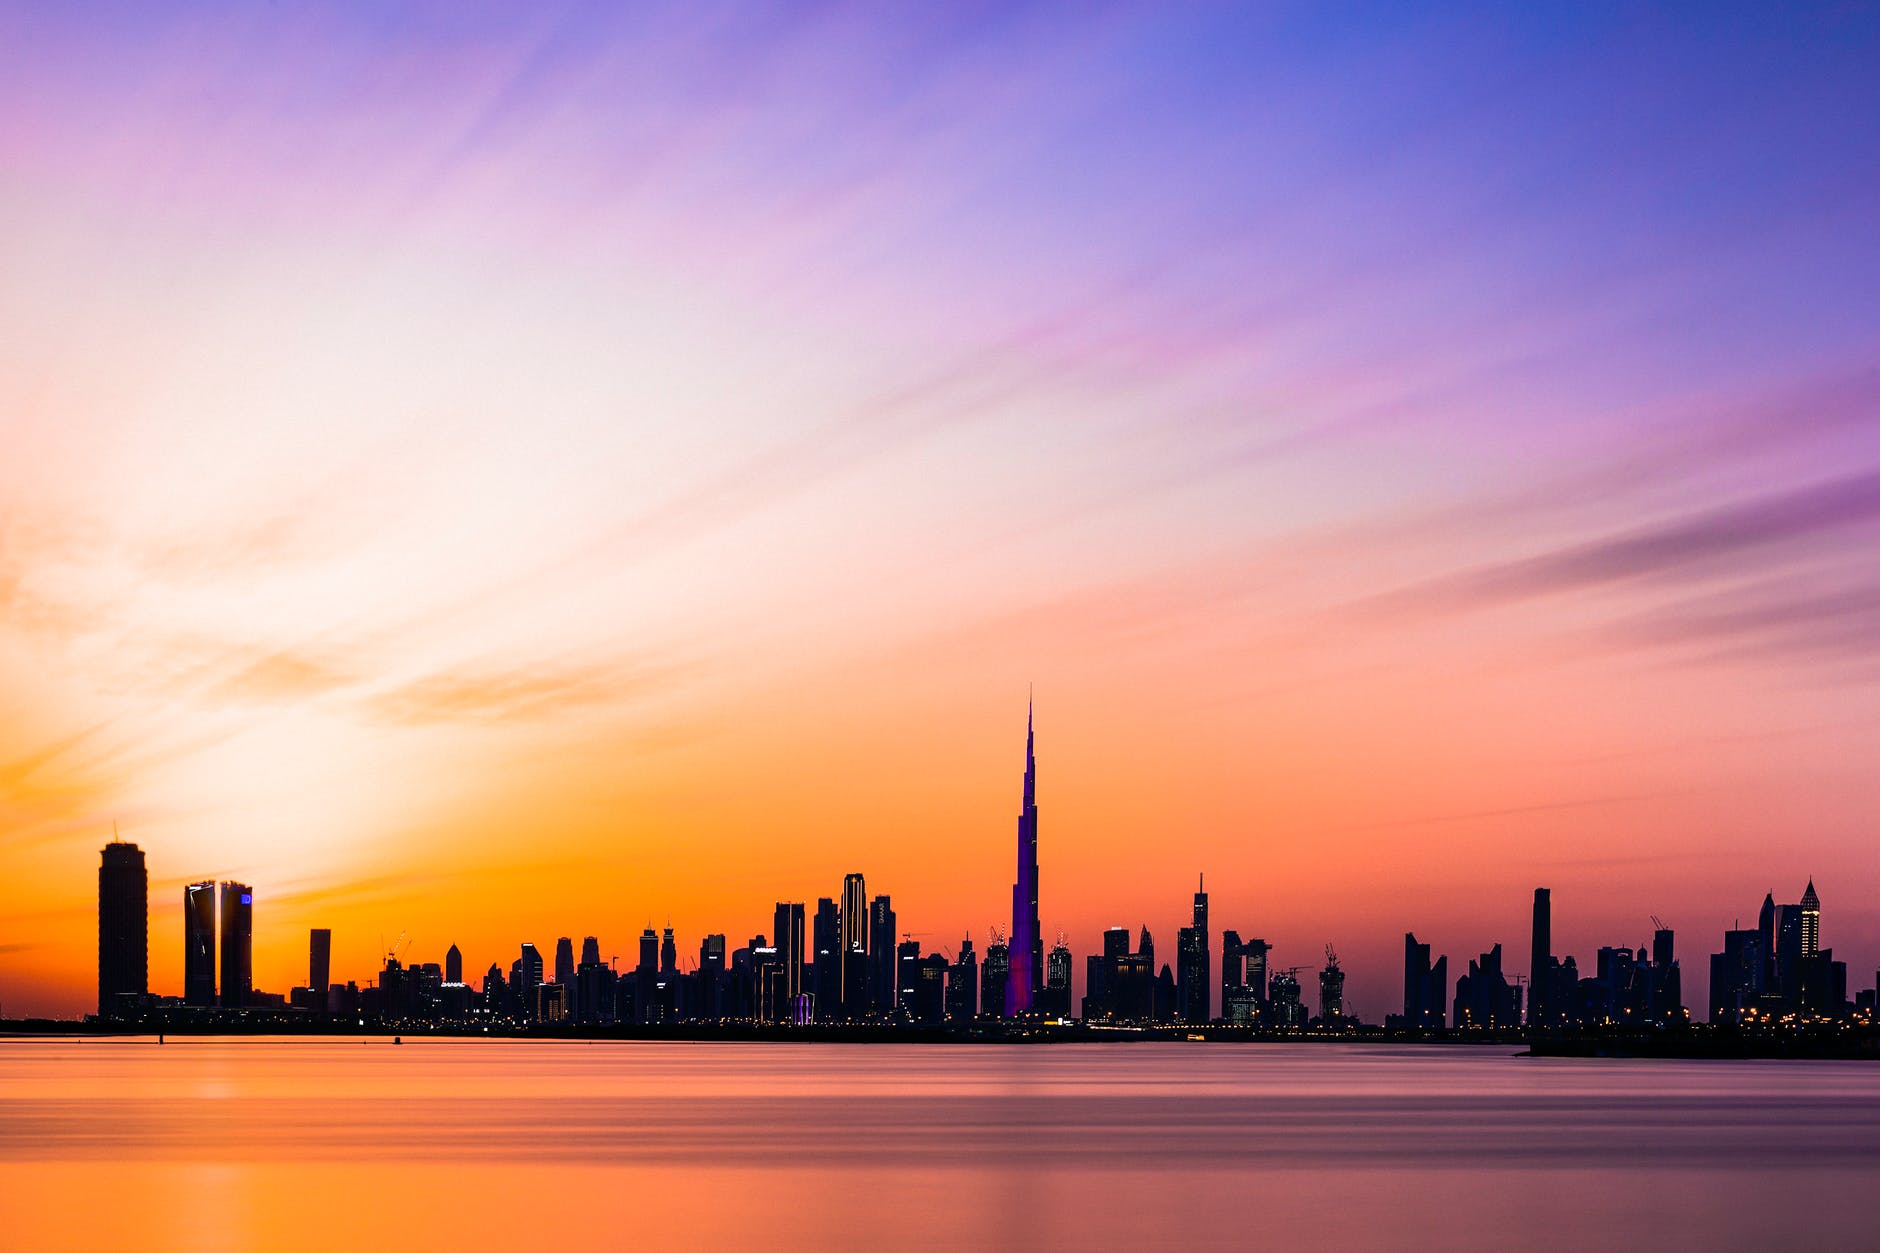 Best 8 Activities To Do In Dubai